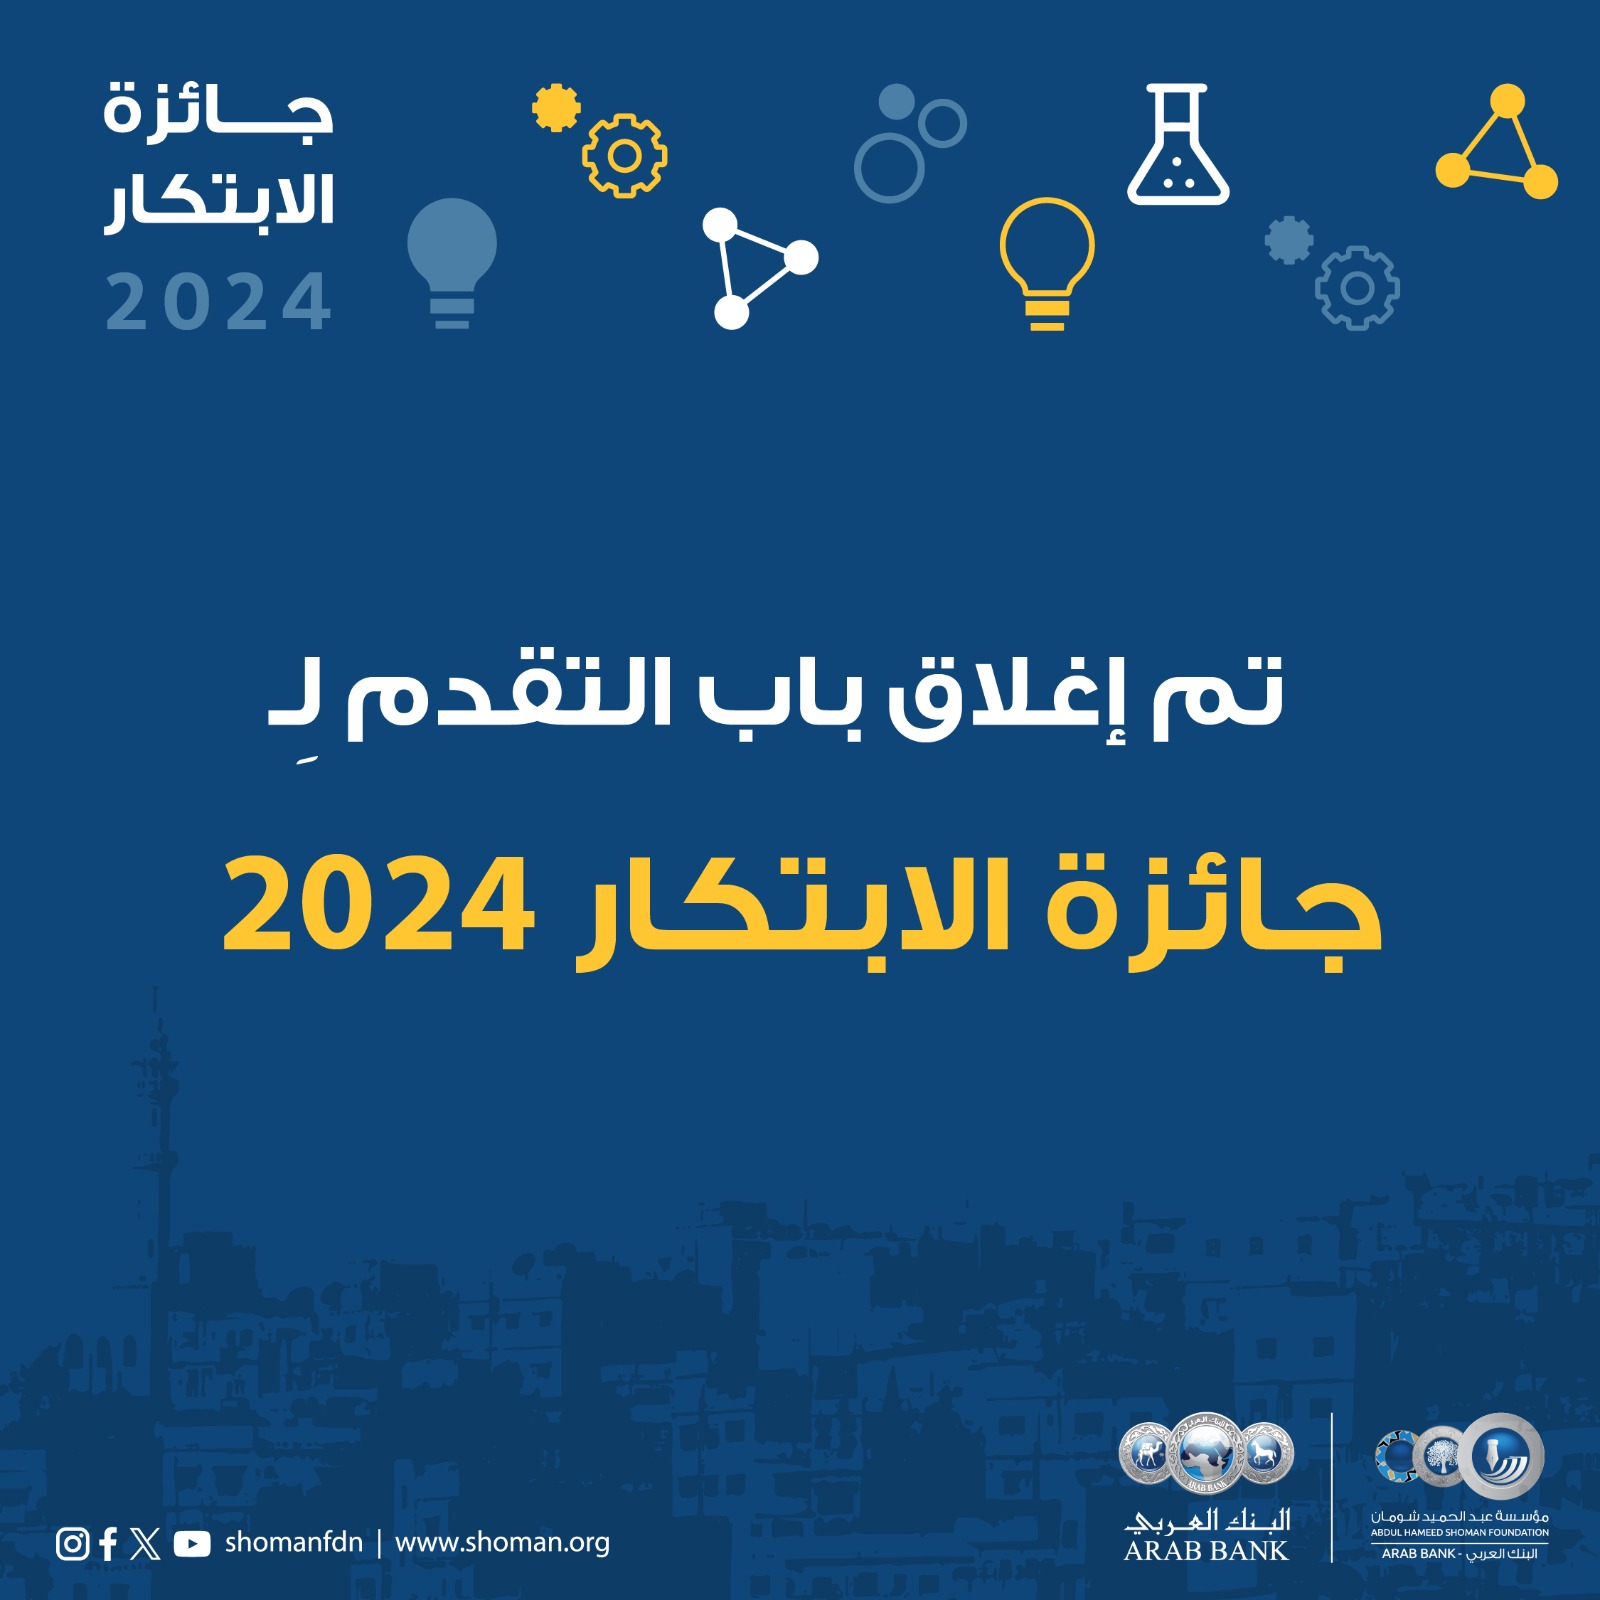 شومان تغلق باب التقدم لجائزتها للابتكار للعام 2024